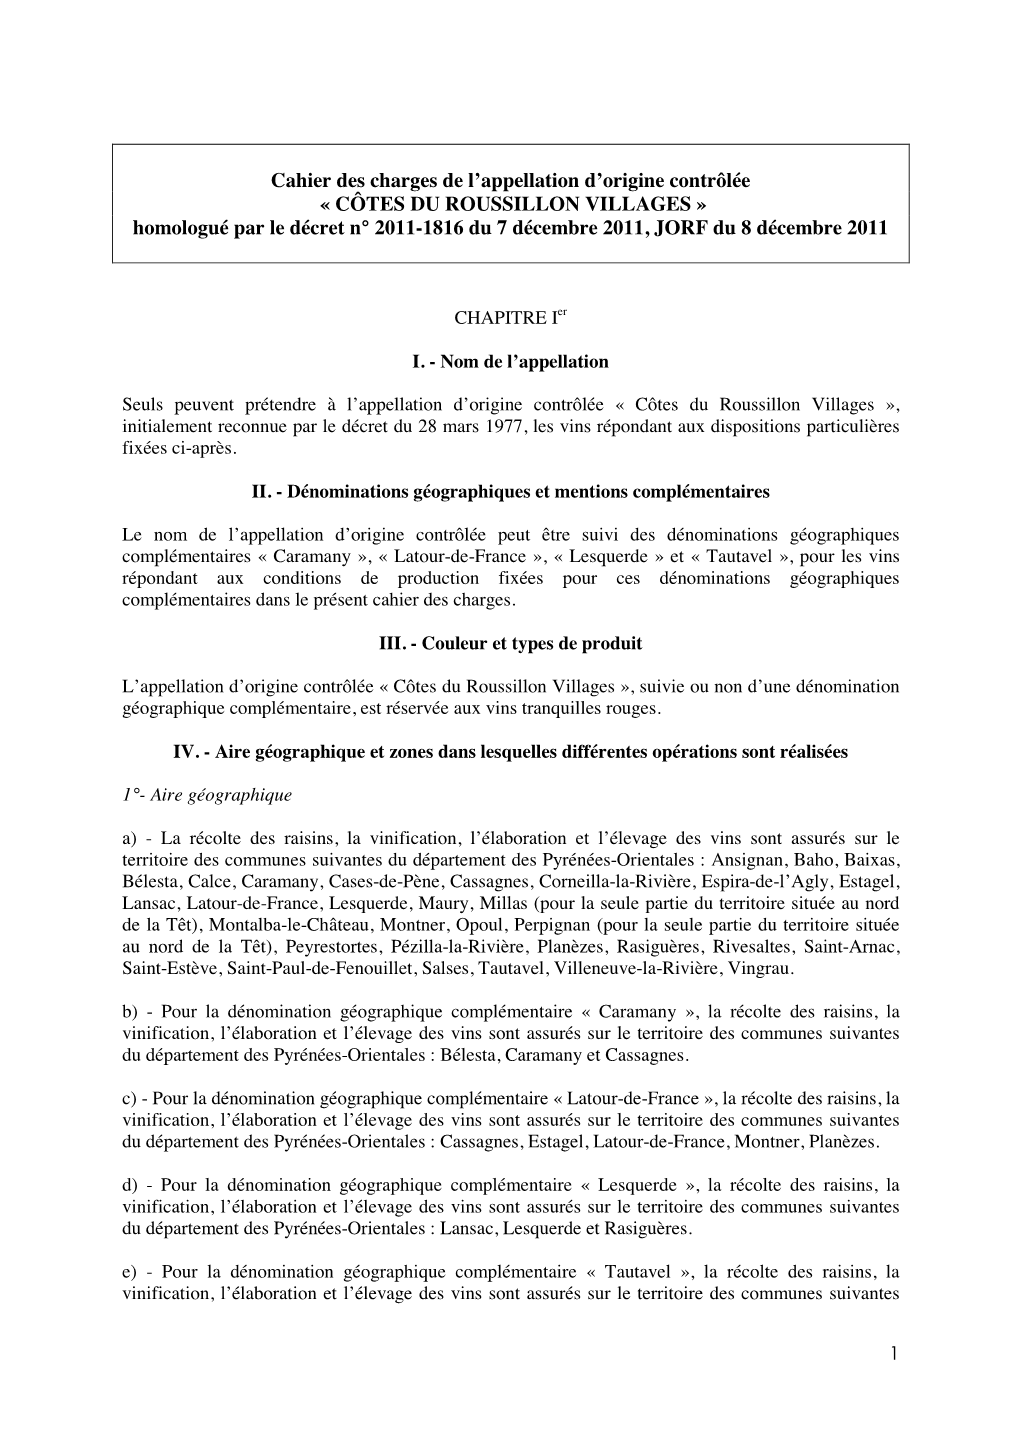 CÔTES DU ROUSSILLON VILLAGES » Homologué Par Le Décret N° 2011-1816 Du 7 Décembre 2011, JORF Du 8 Décembre 2011